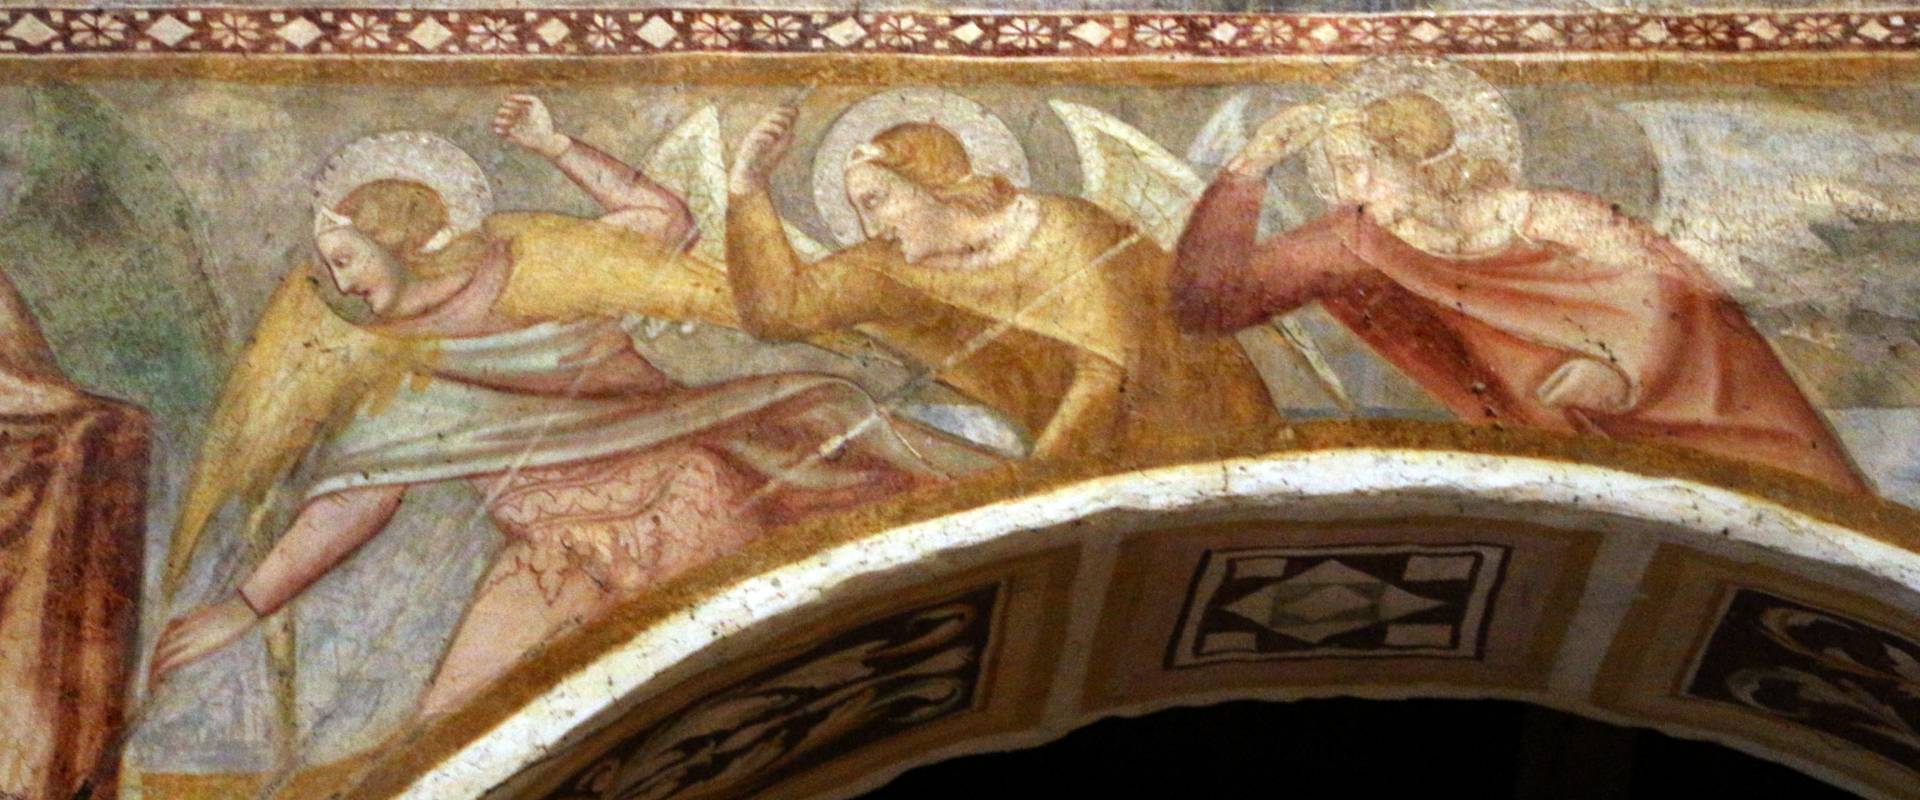 Scuola bolognese, ciclo dell'abbazia di pomposa, 1350 ca., apocalisse, 11 michele e gli angeli sconfiggono satana 6 photo by Sailko